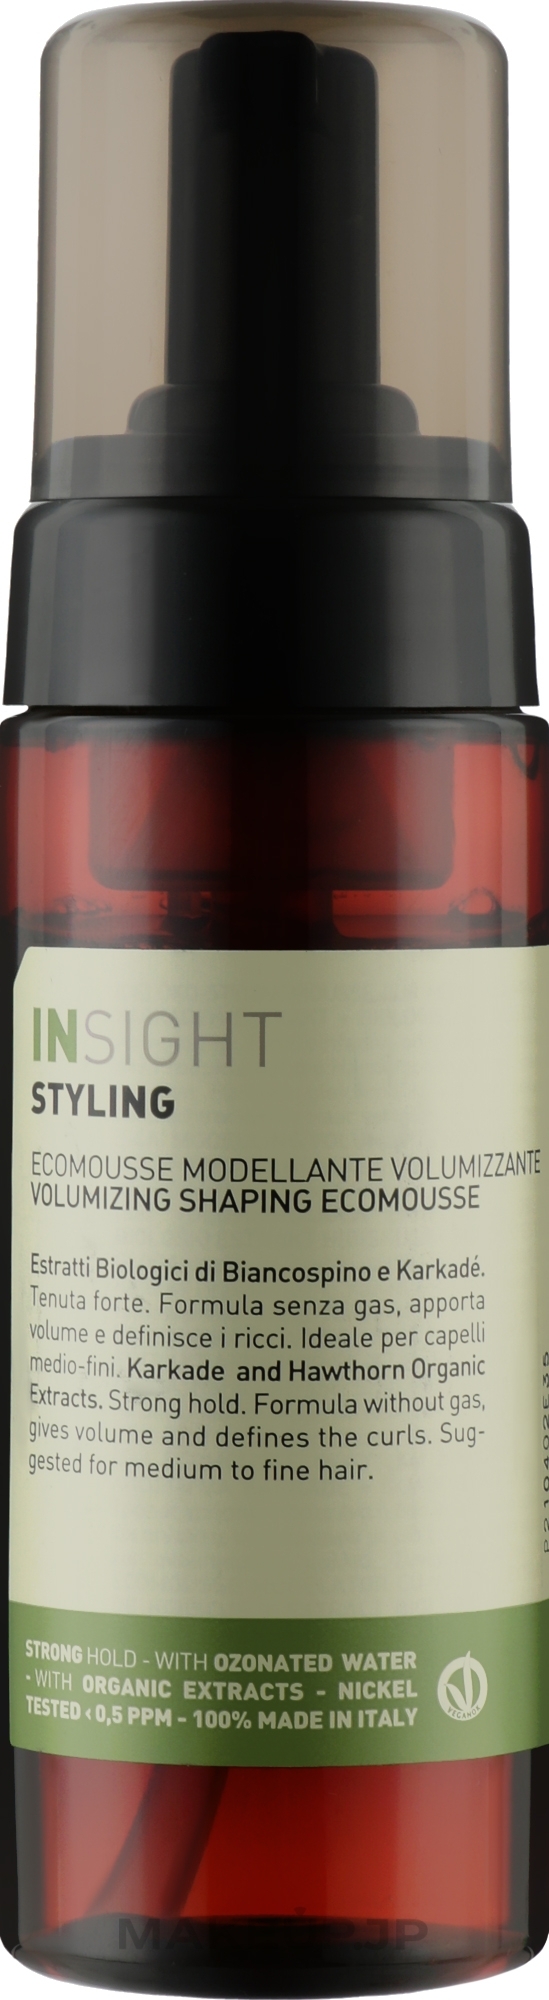 Volumizing Hair Styling Eco Mousse - Insight Styling Volumizing Ecomousse — photo 150 ml